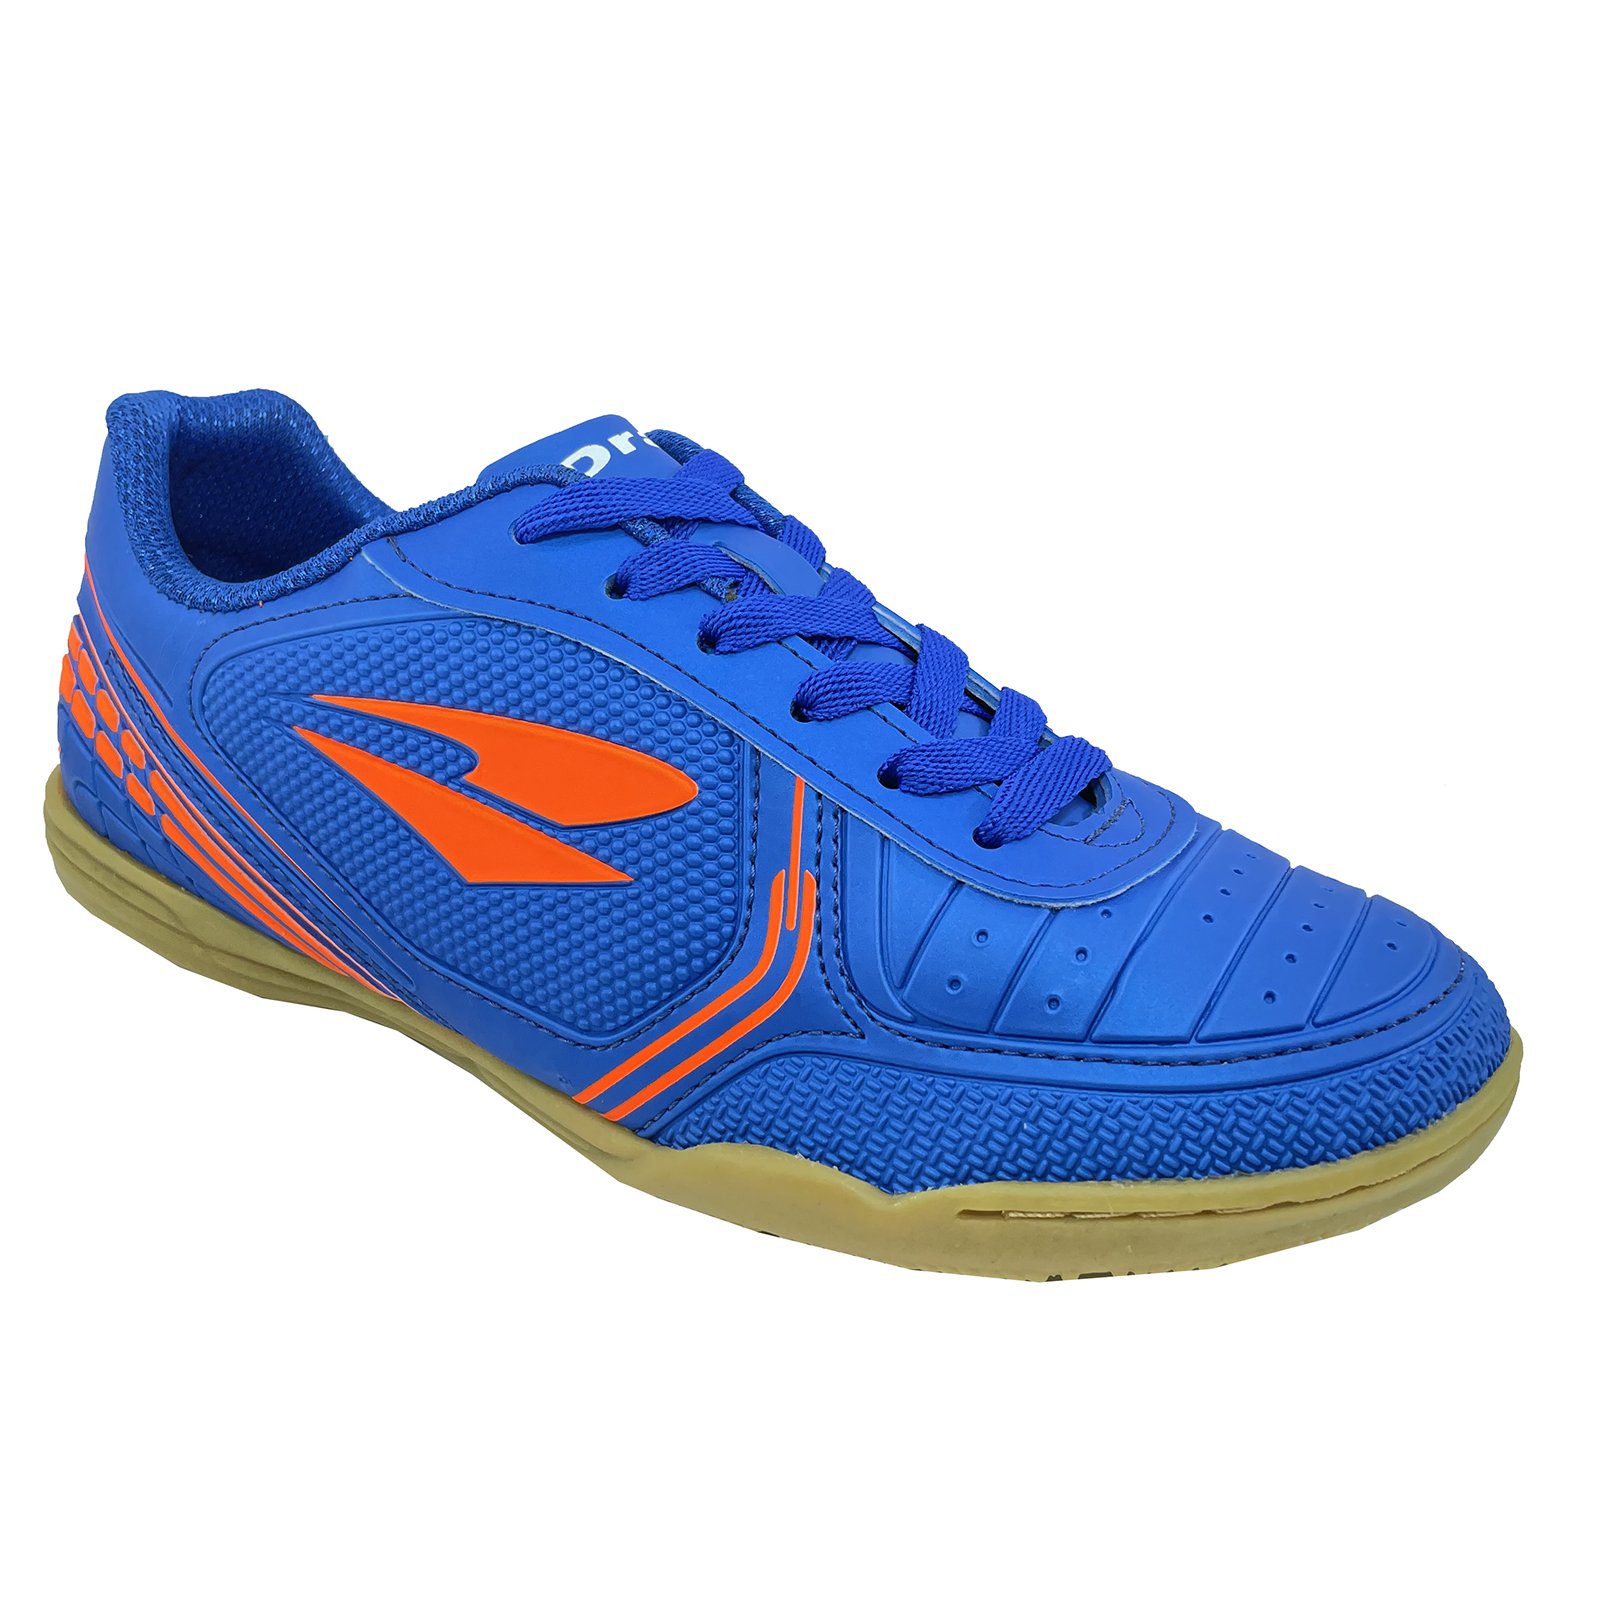 Chuteira Futsal Dray 806 Masculina - Azul e Laranja Azul 1